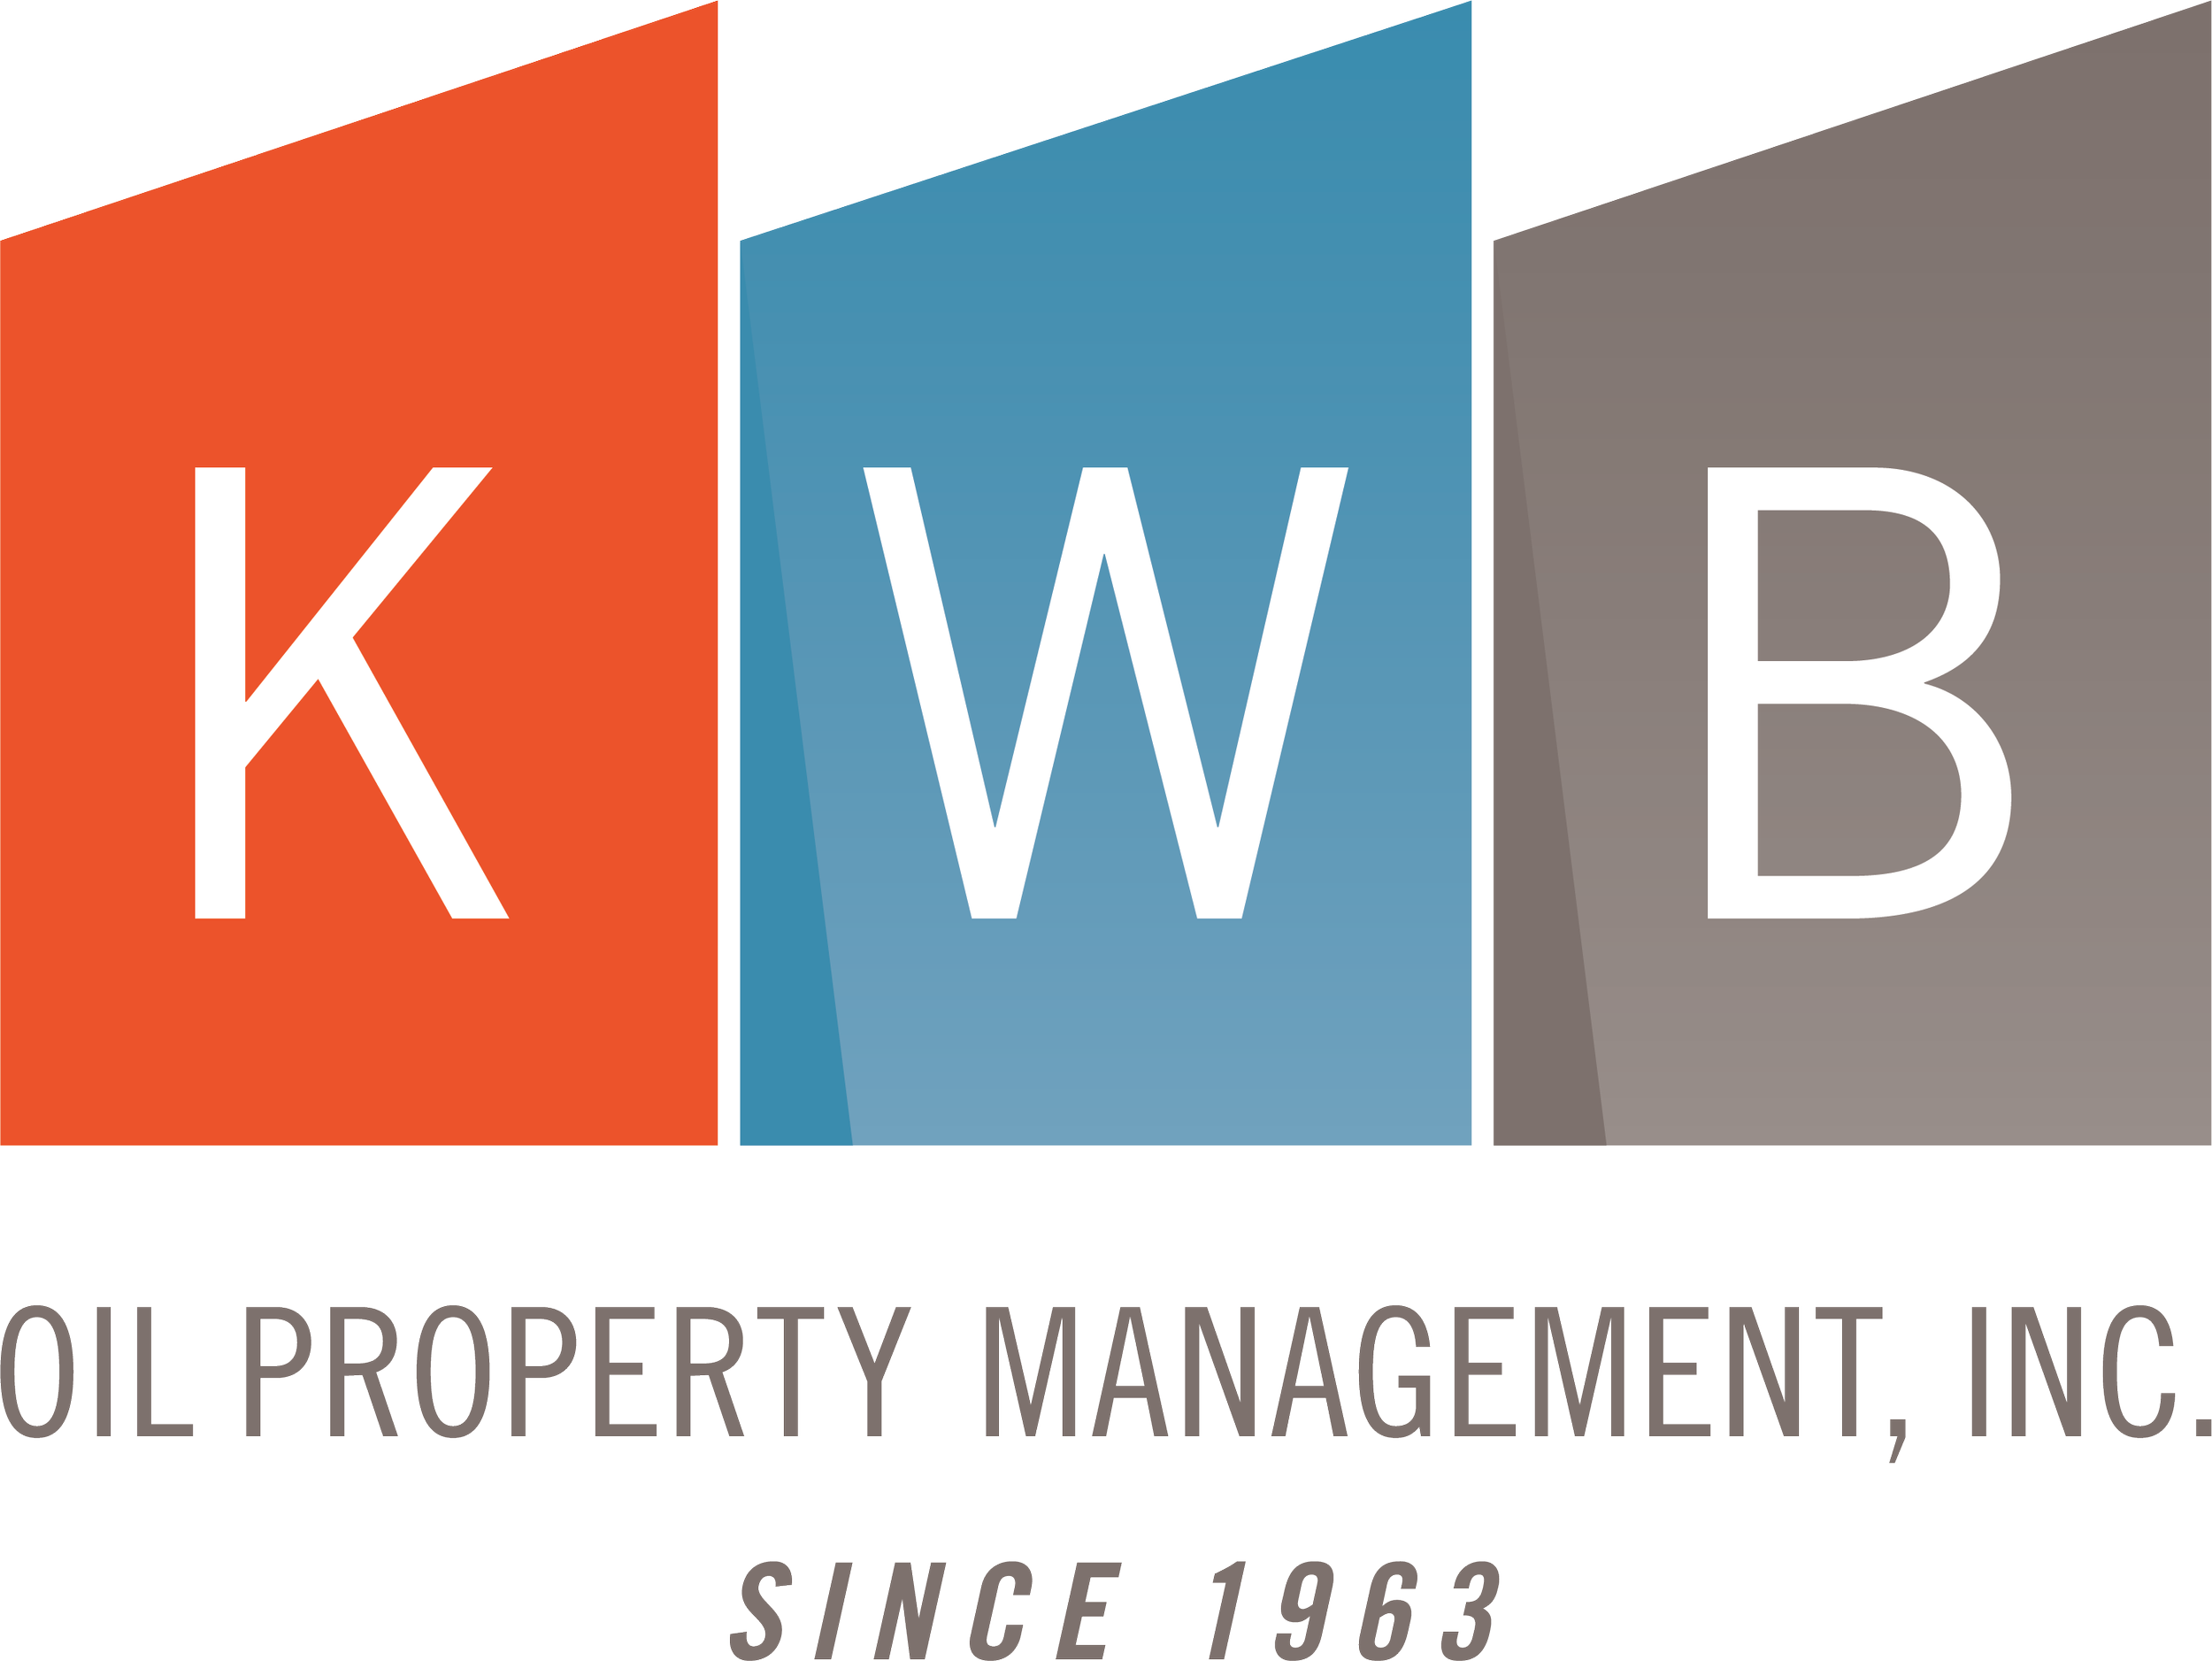 kwb_logo.png